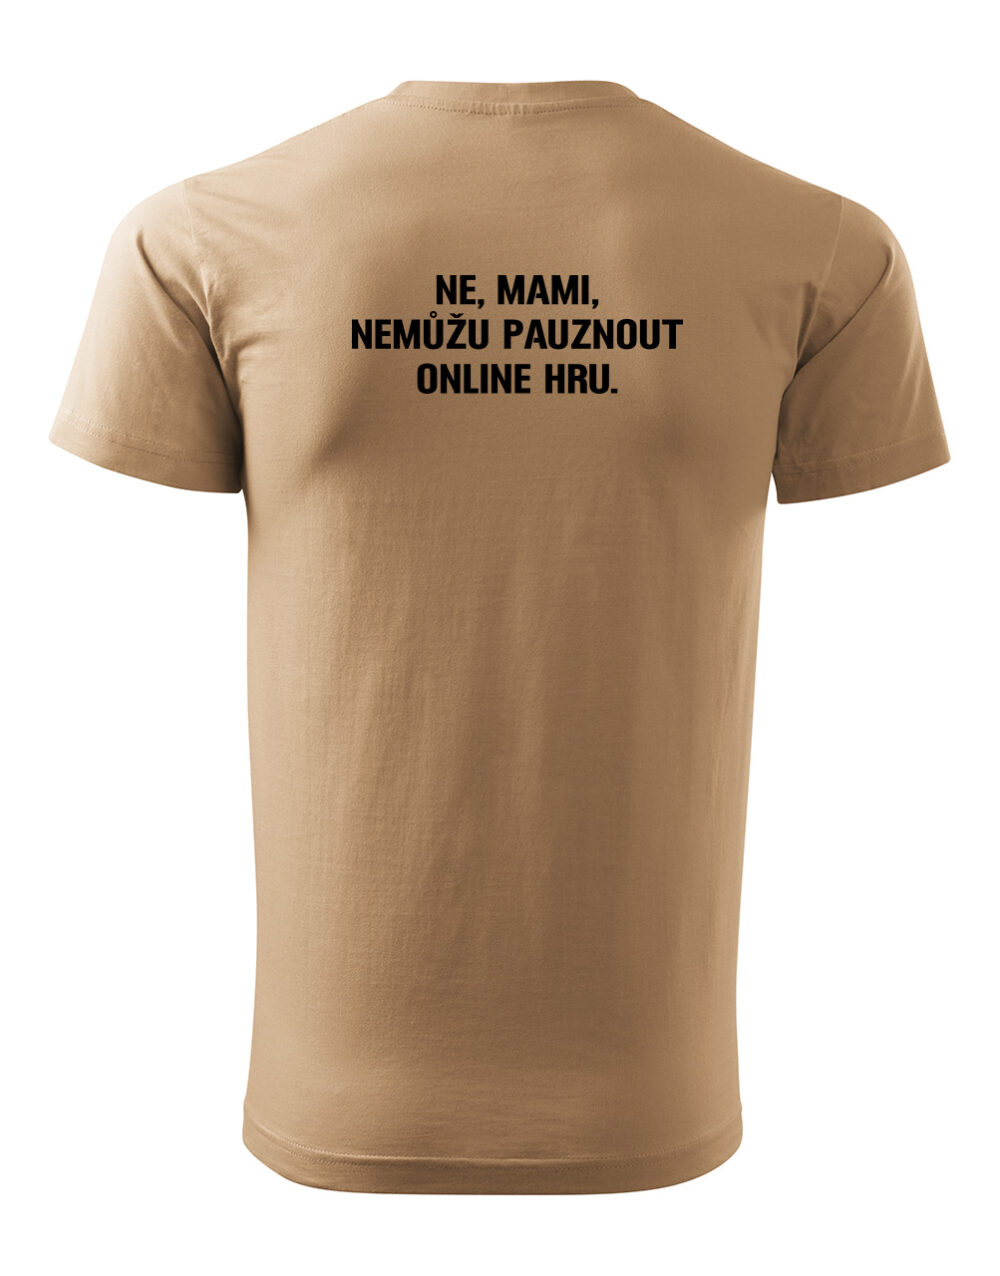 Pánské tričko s potiskem Nemůžu pauznout online hru písková